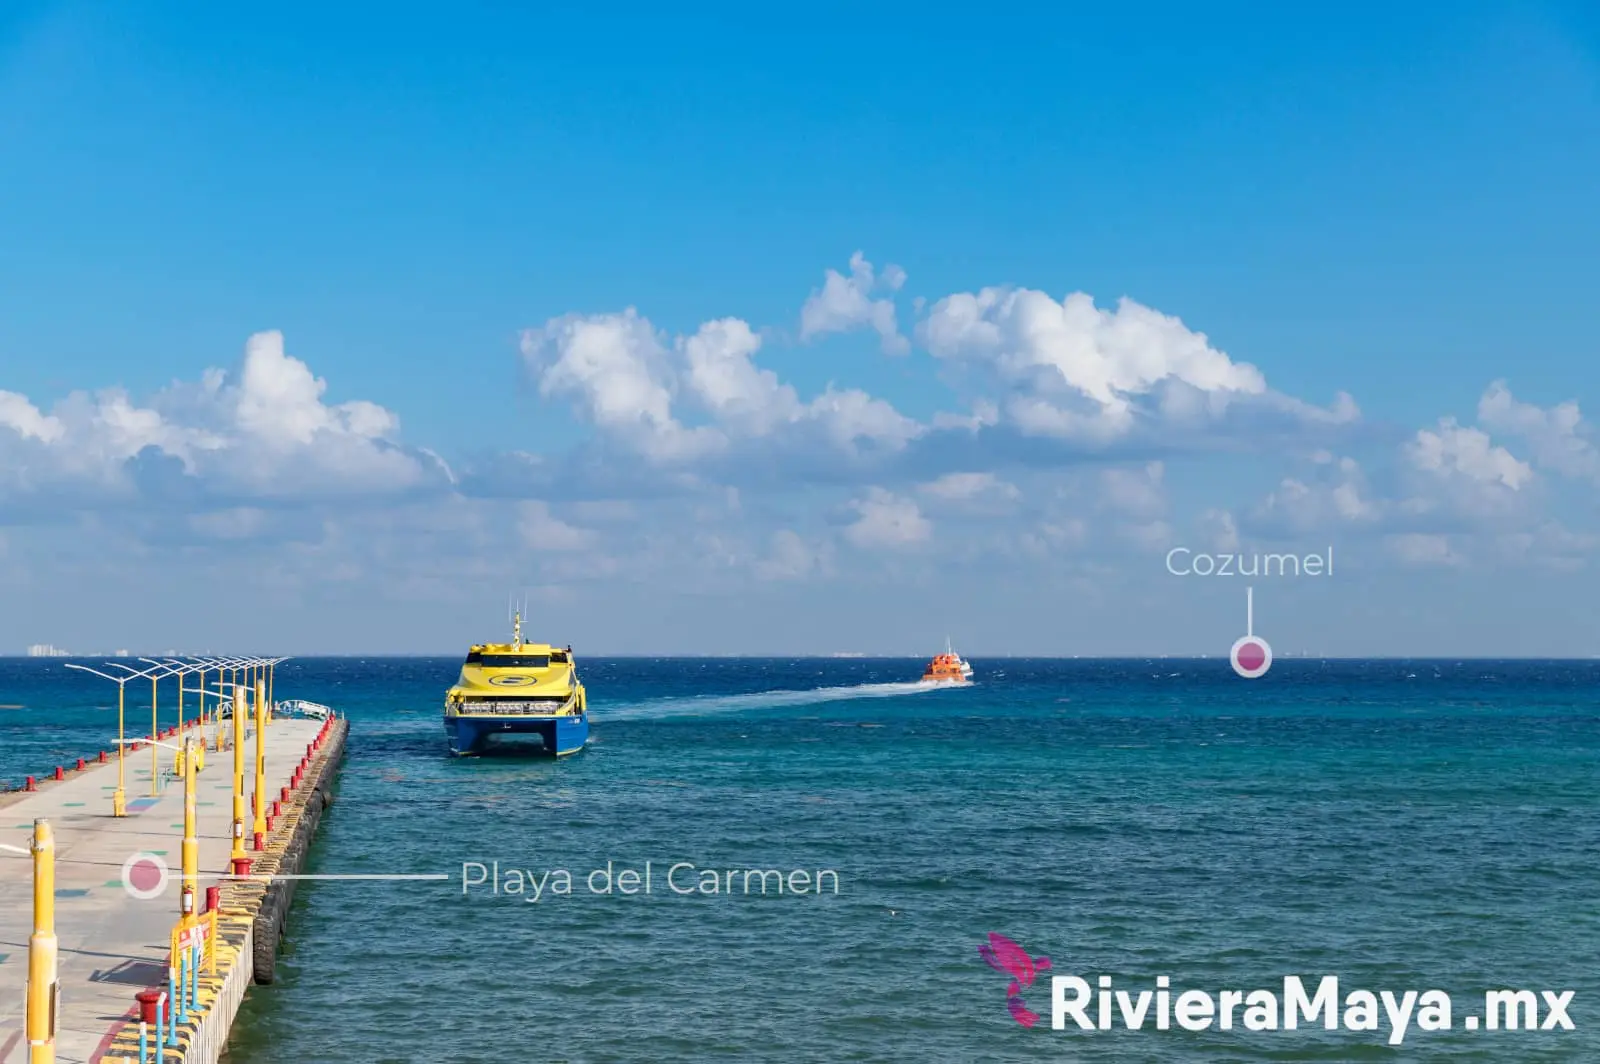 cuanto cuesta el ferrari a cozumel - Cuánto cuesta el ferry a Cozumel desde Playa del Carmen